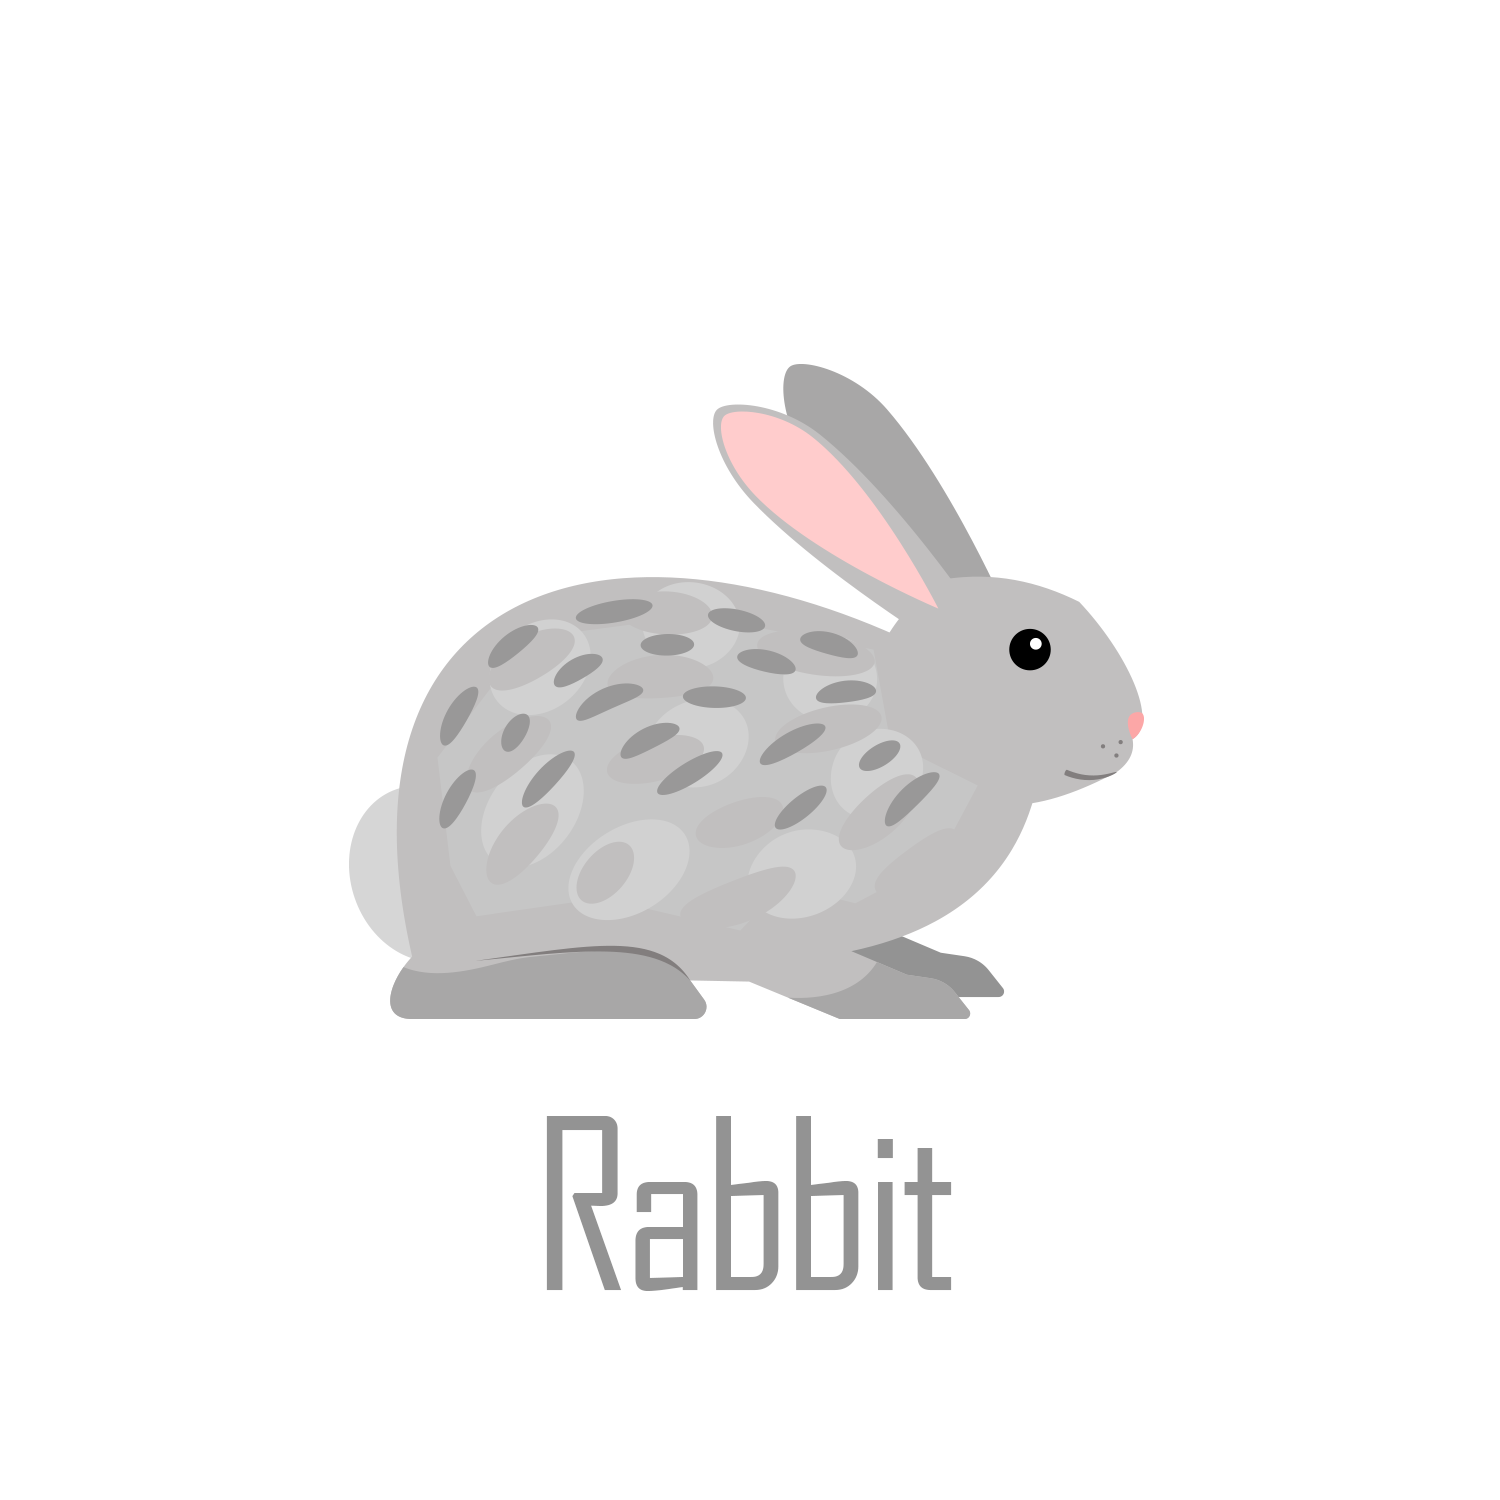 Rabbit Record Book Icon